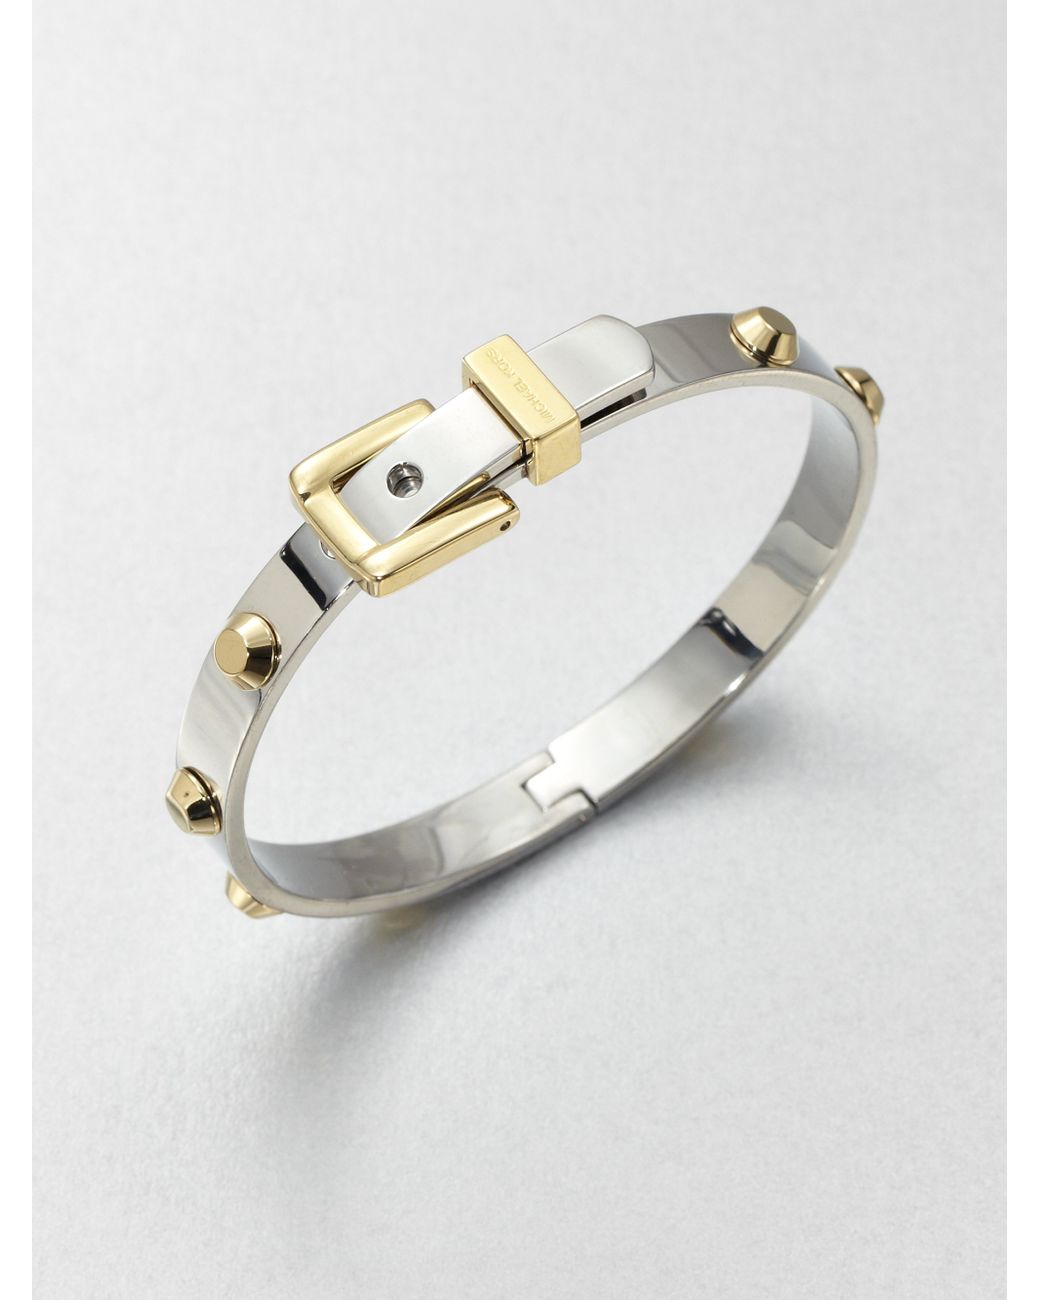 Louis Vuitton Women's Rivet Bracelets